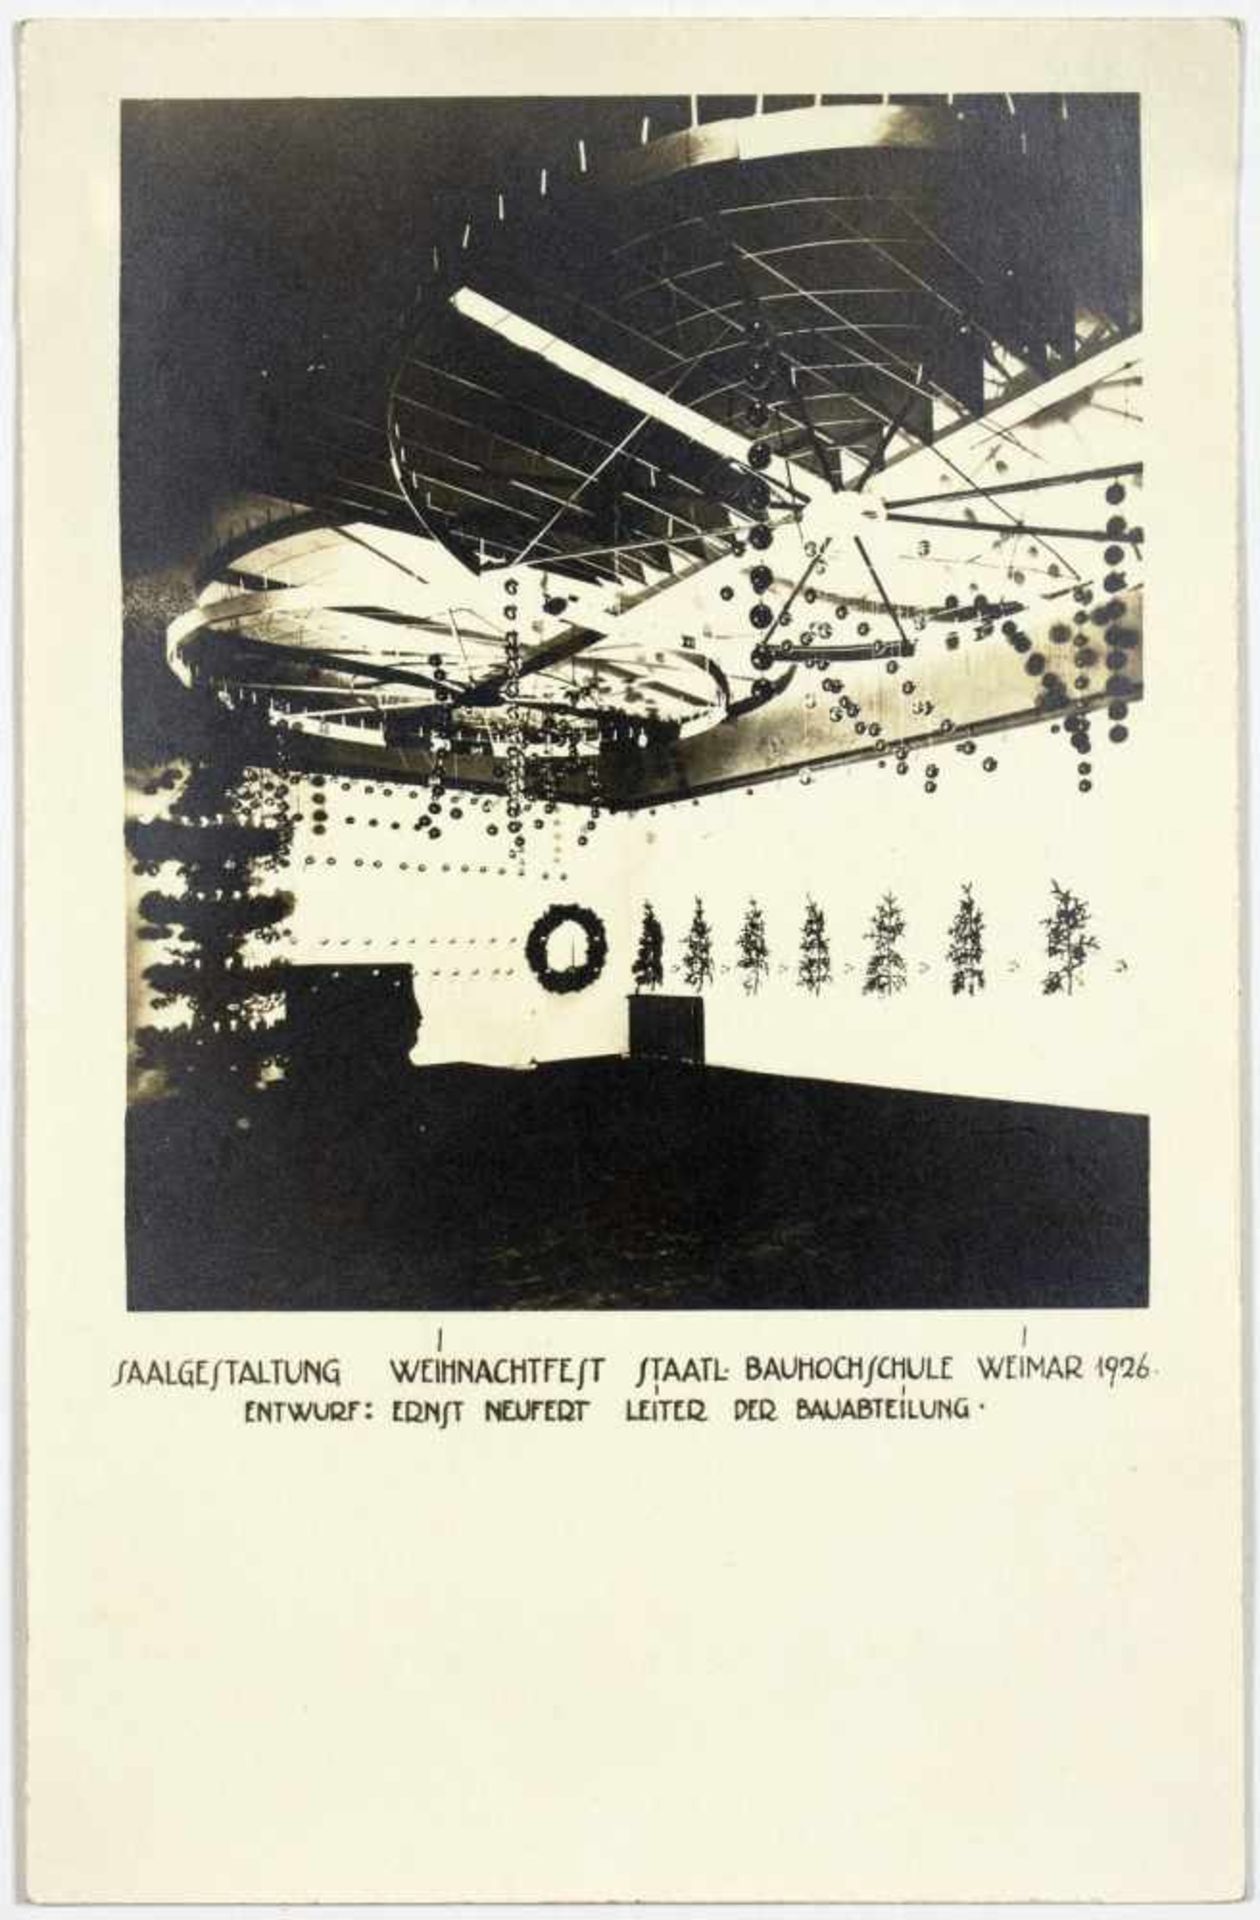 Bauhaus - Saalgestaltung Weihnachtsfest Staatl. Bauhochschule Weimar 1926. Drei Originalfotografien. - Bild 2 aus 3